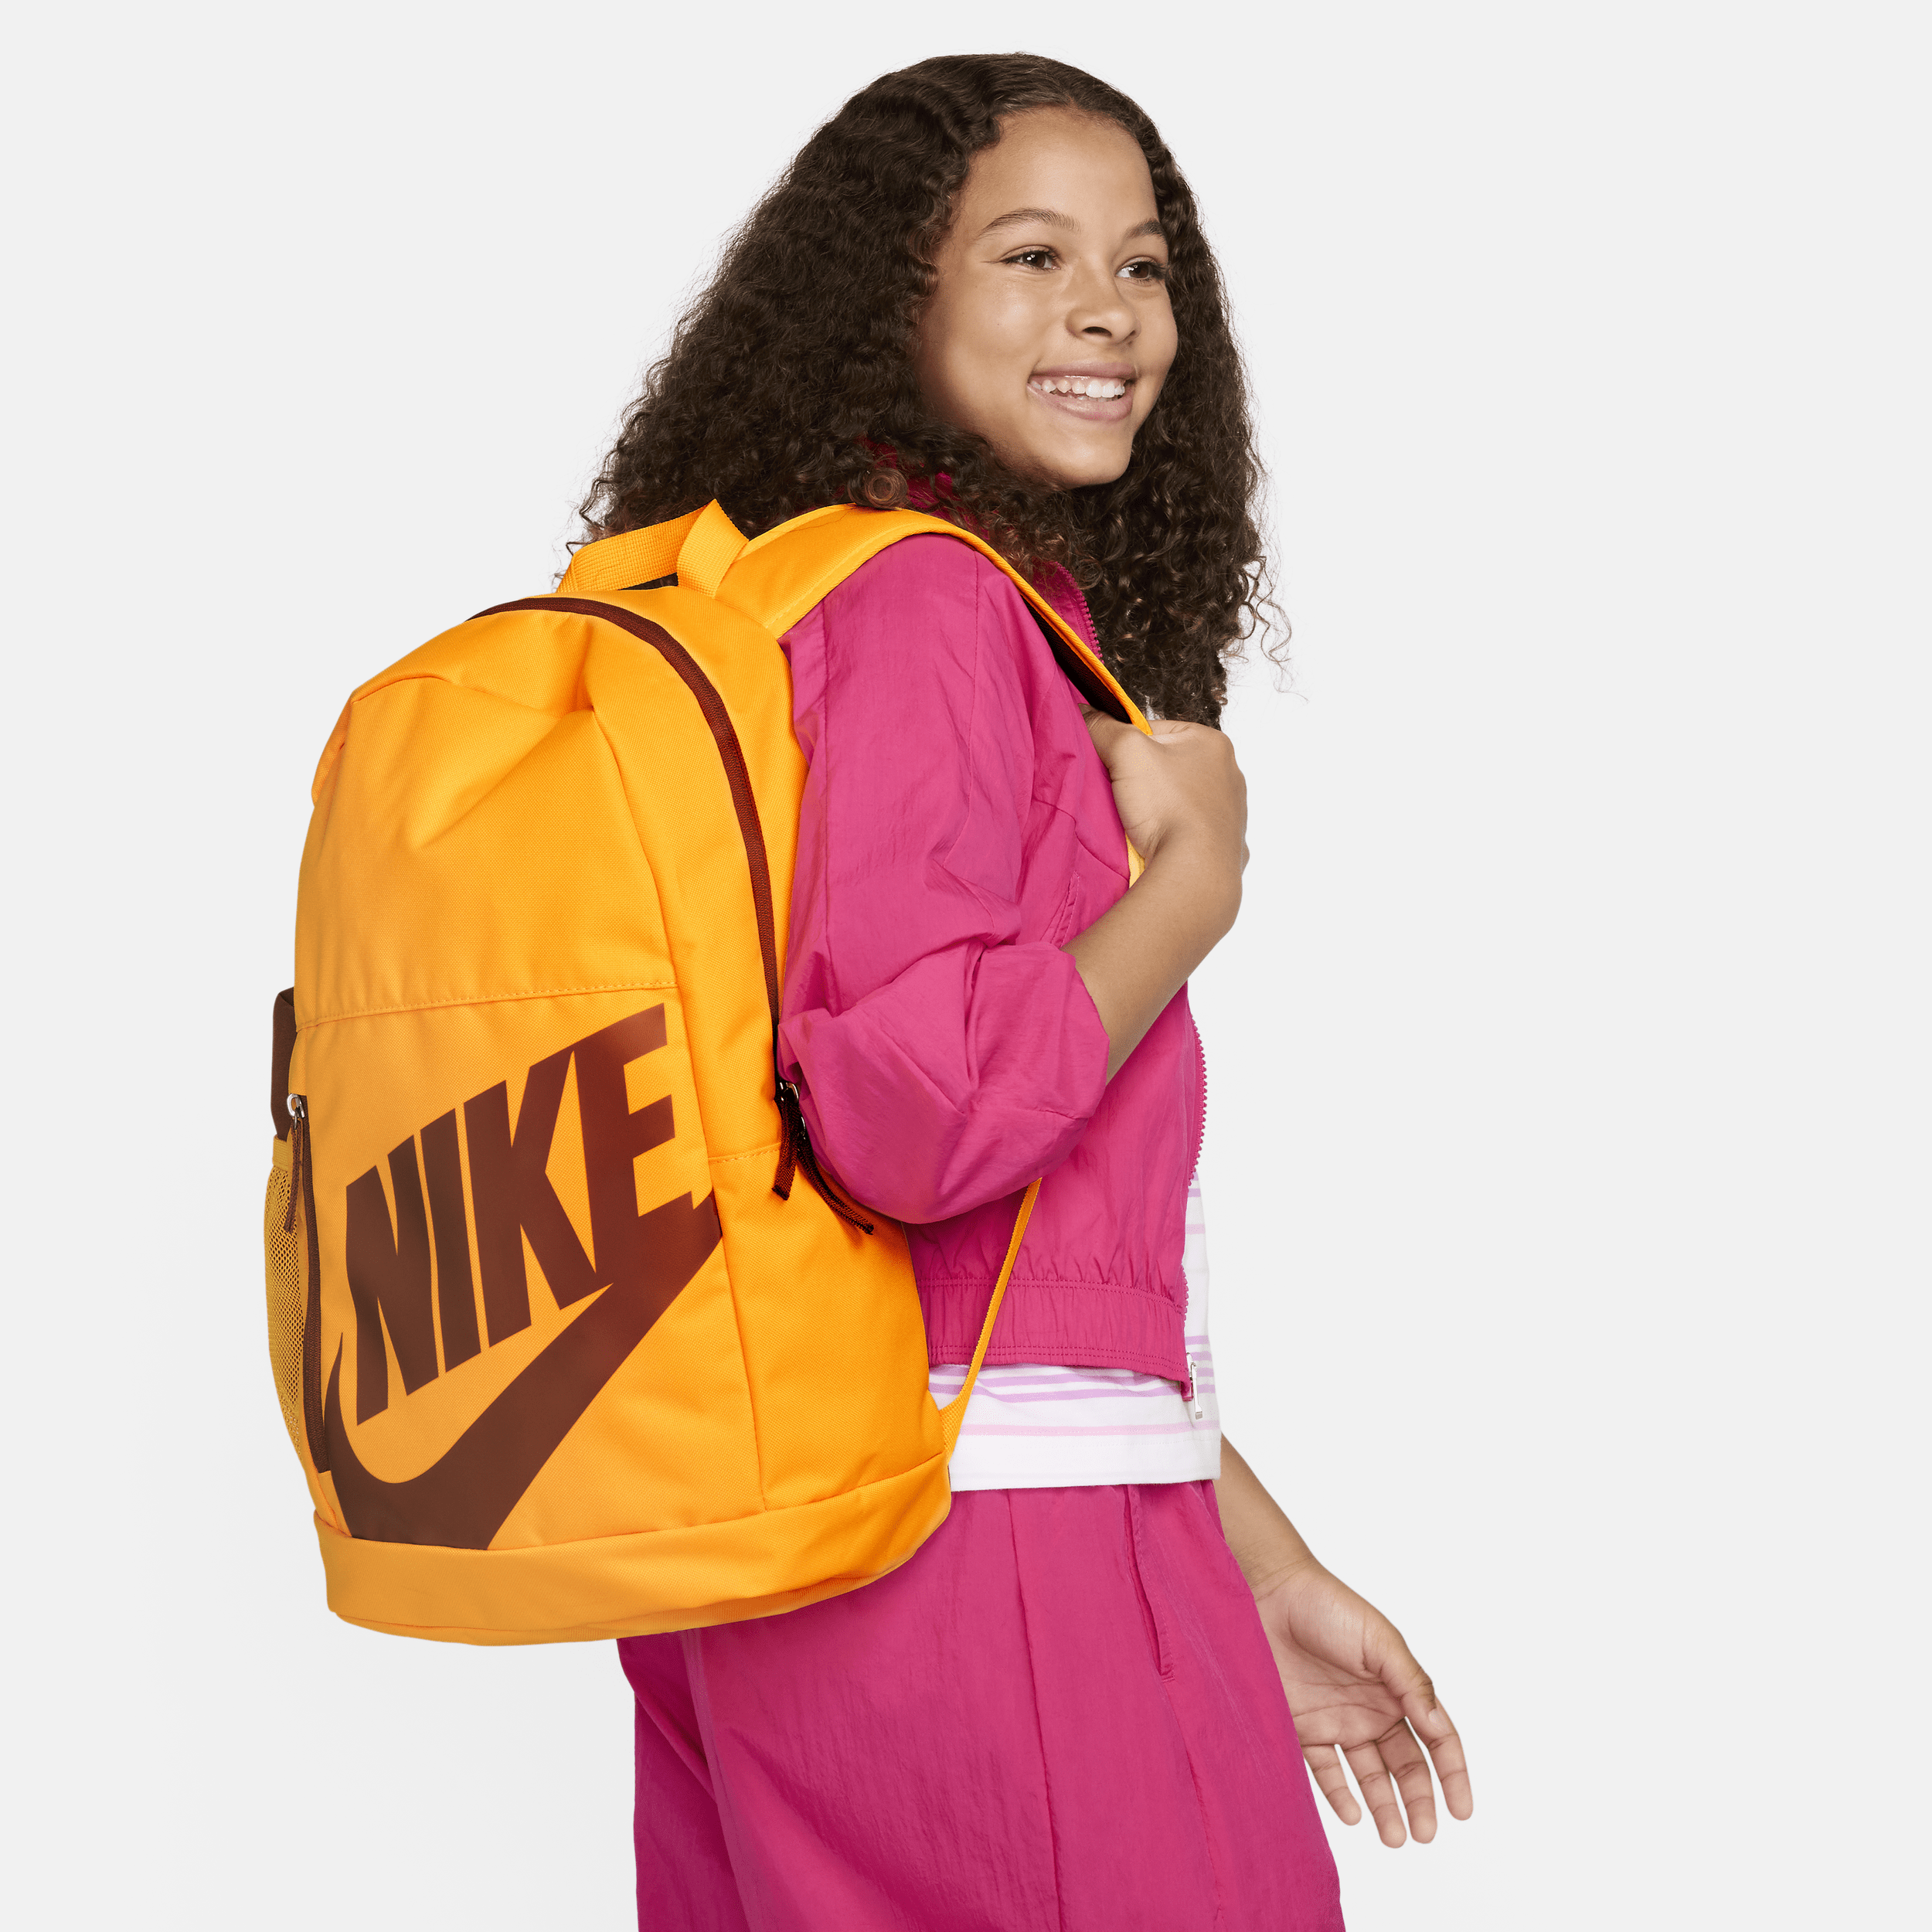 Nike Mochila - Niño/a (20 L) - Naranja